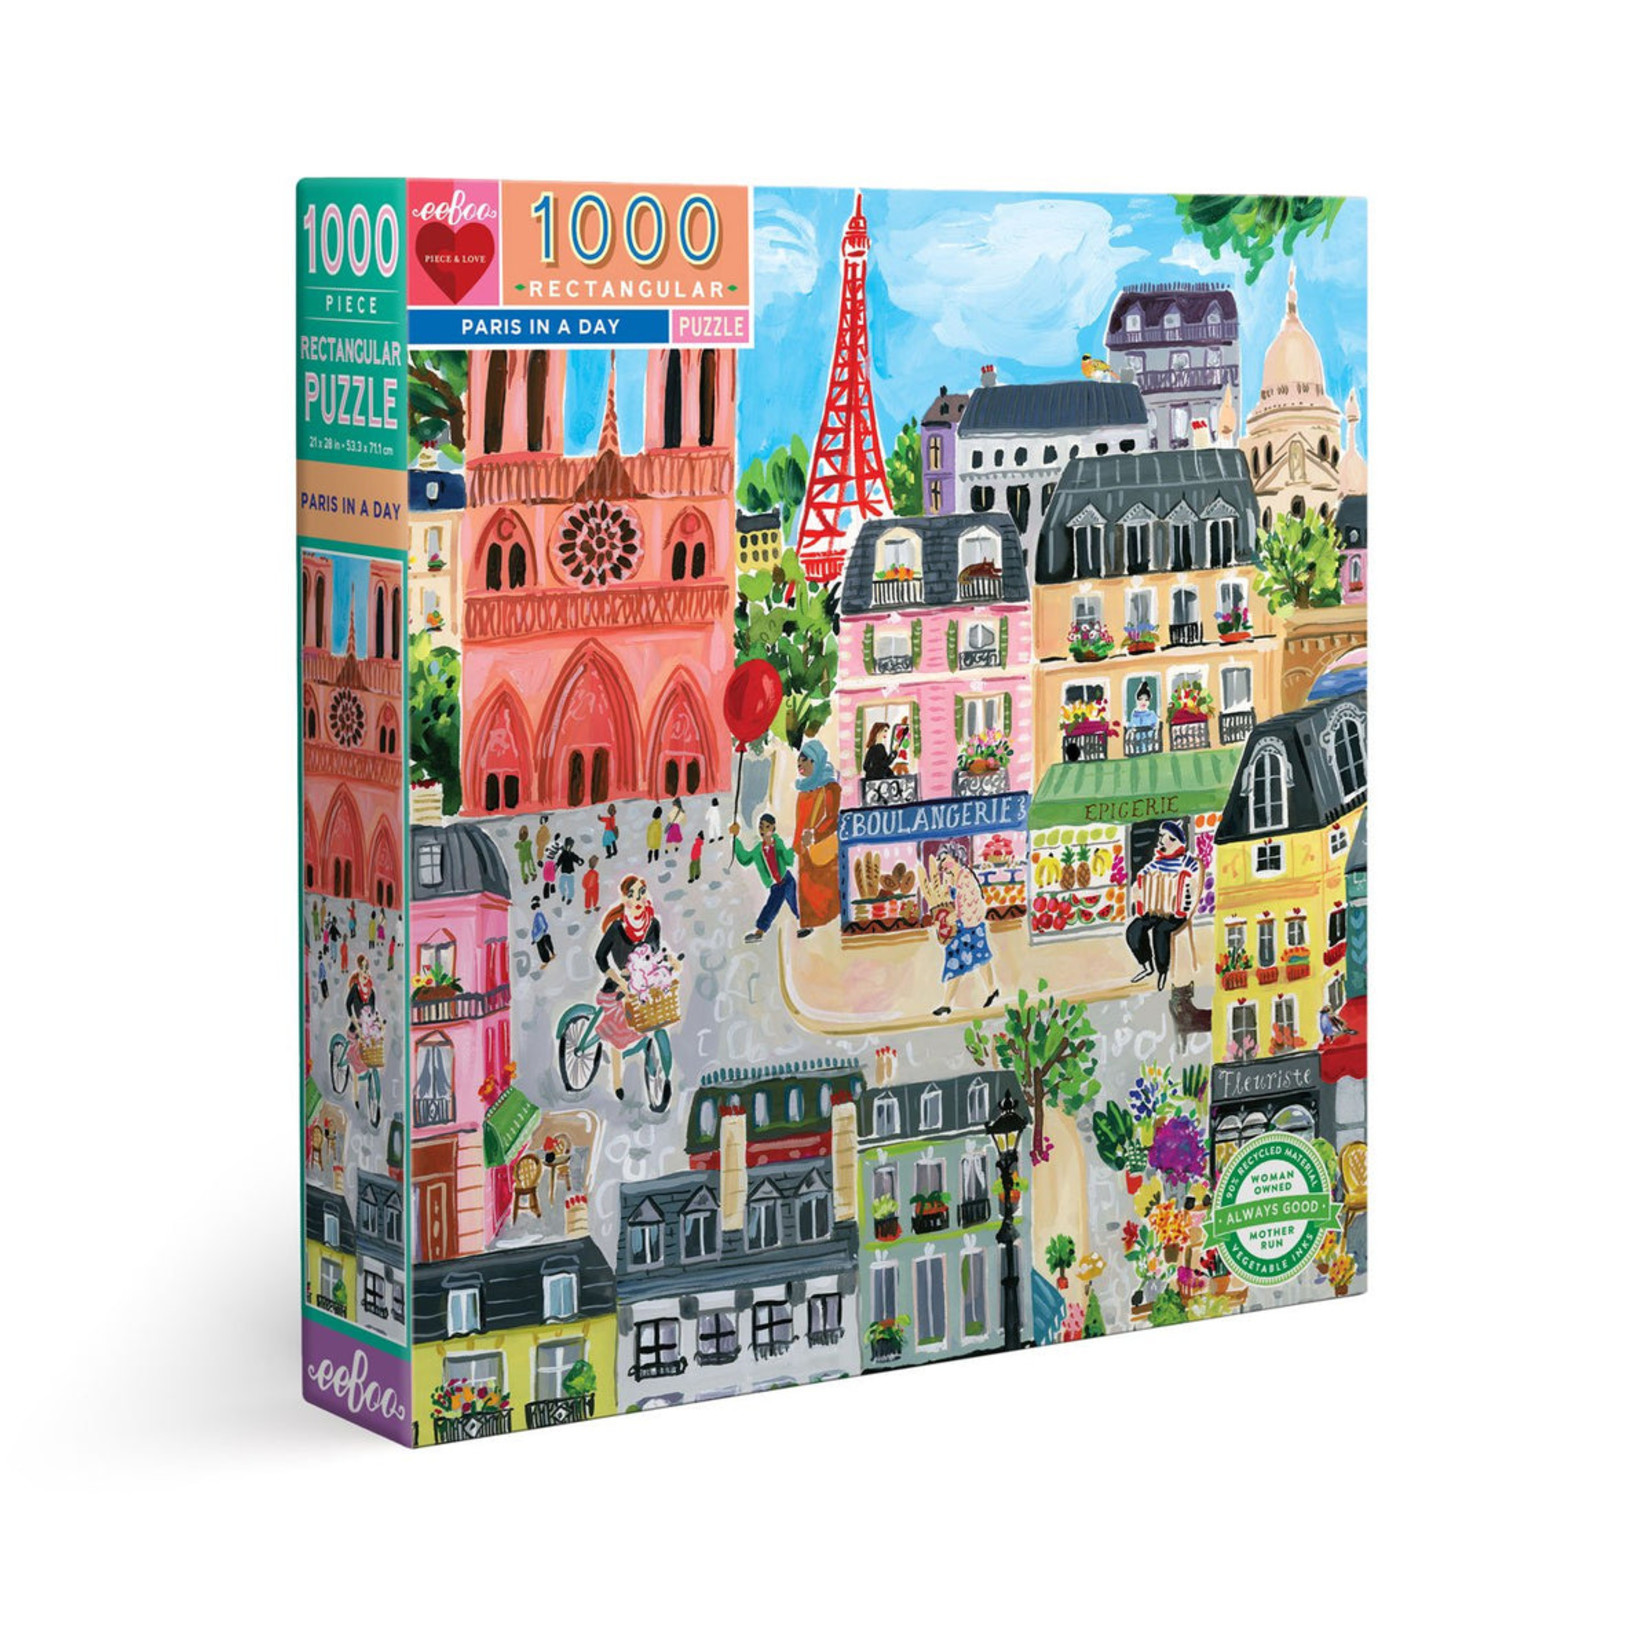 Eeboo Paris in a Day 1000 Piece Puzzle